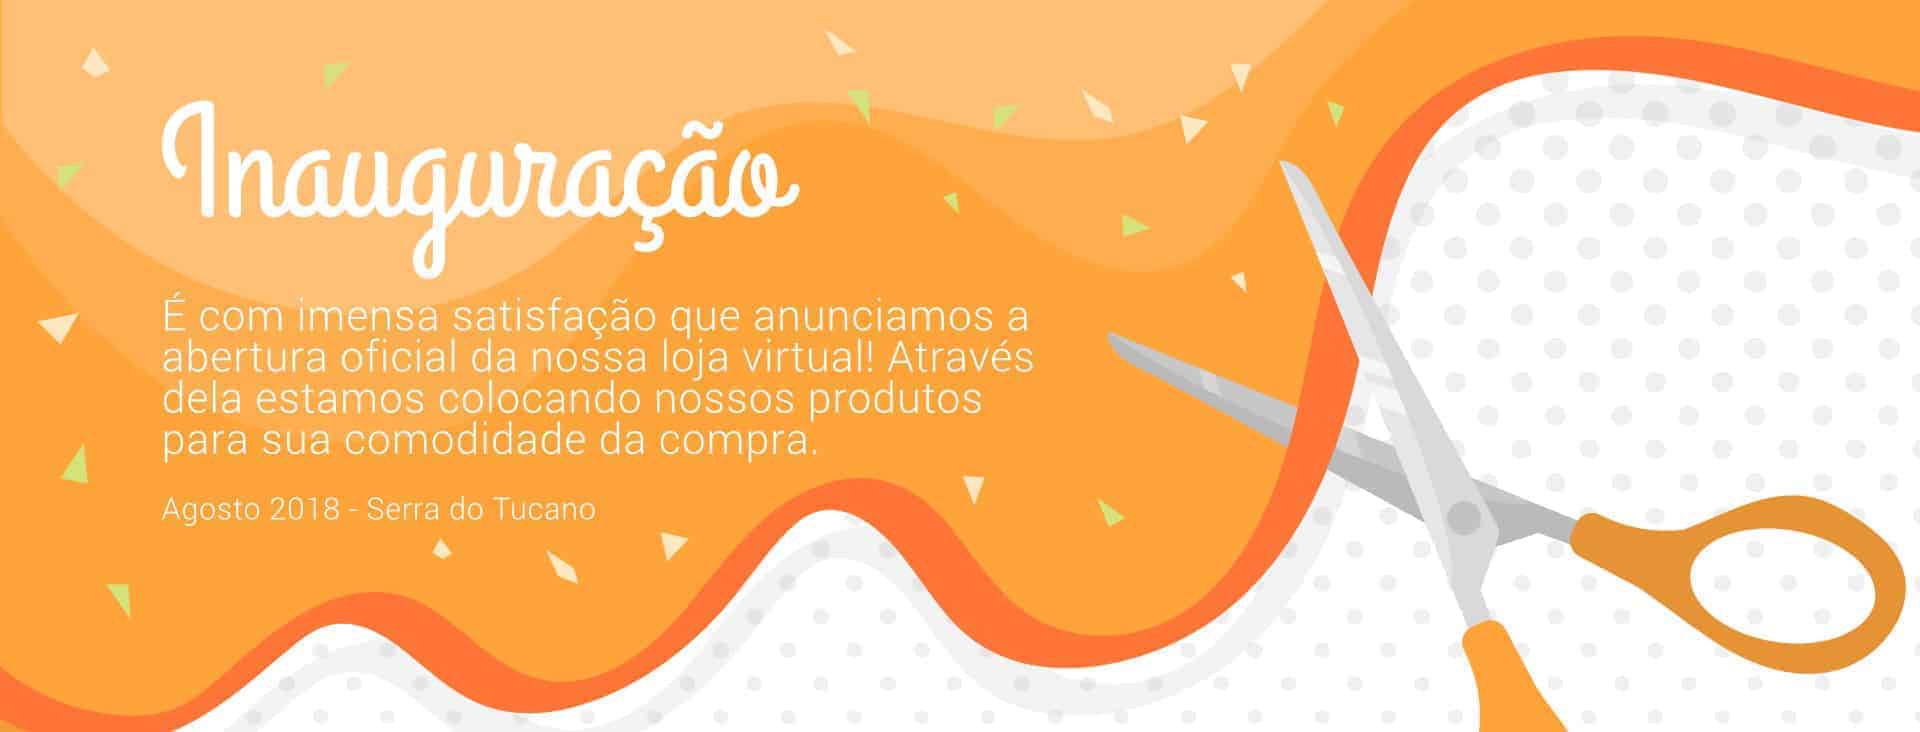 Inauguração da loja virtual da Serra do Tucano 